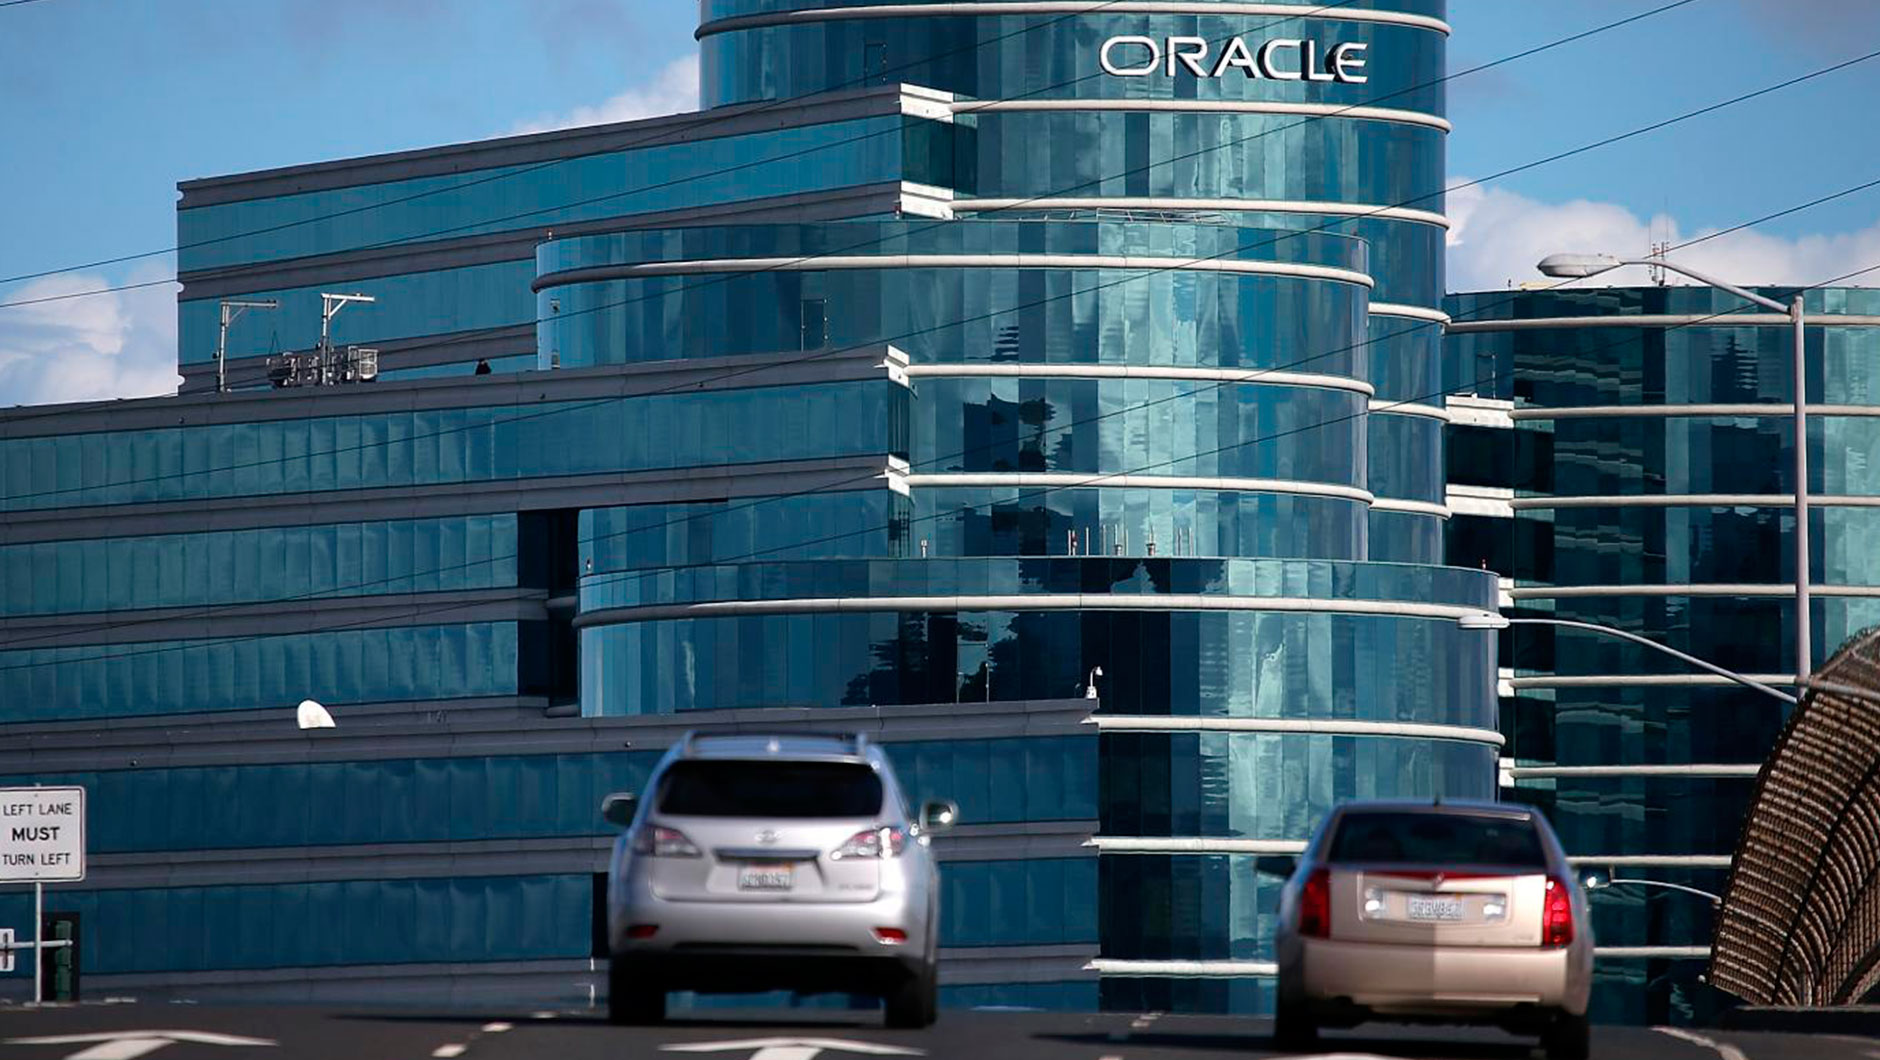 Клиентская база Oracle довольно внушительна - 400 тысяч клиентов из 175 стран мира. Штаб-квартира компании находится в Редвуд-Сити, Калифорния, США